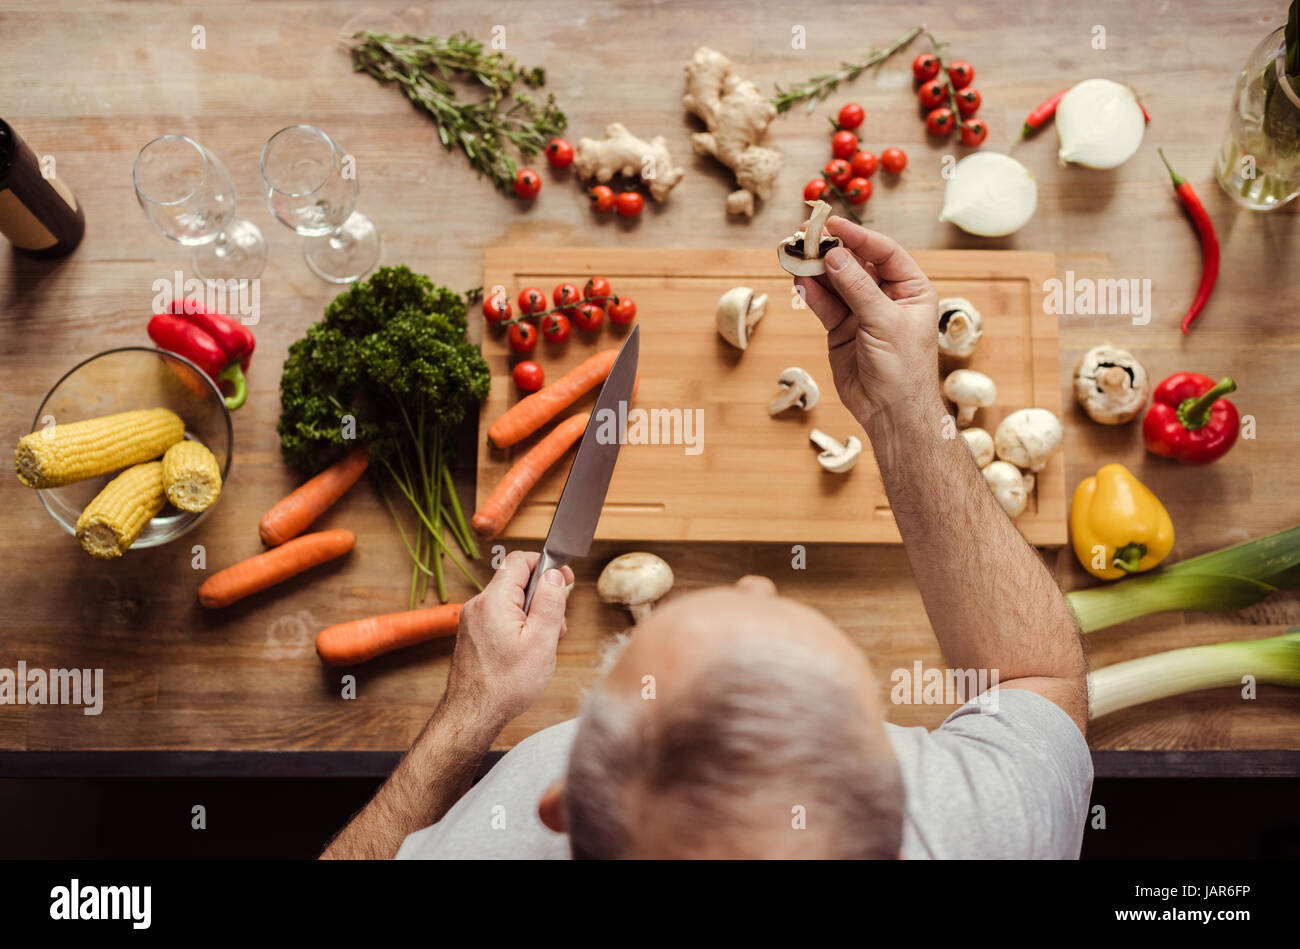 Man preparing vegan food Stock Photo